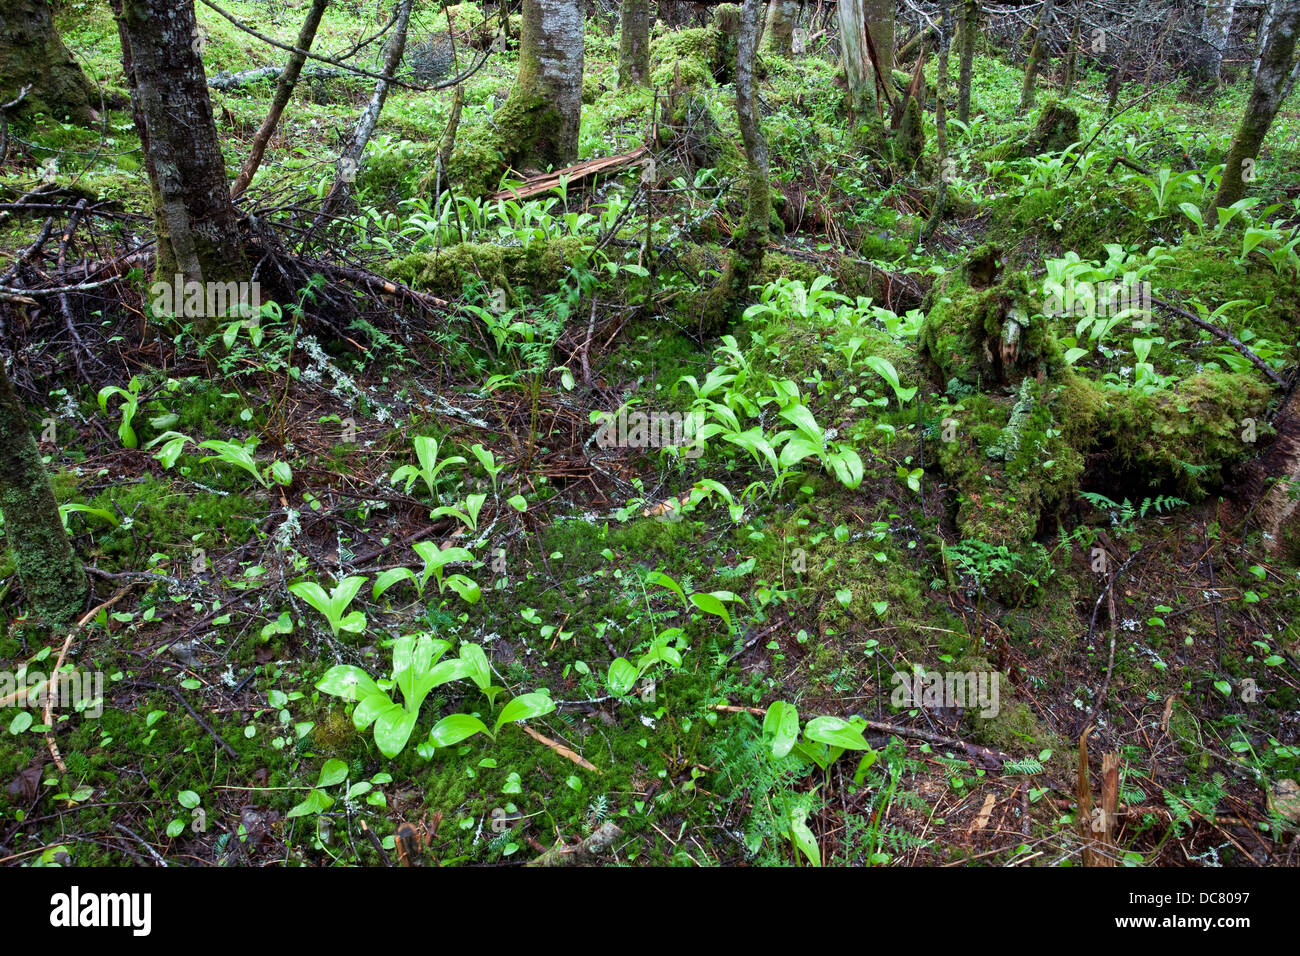 Forêt typique de Terre-Neuve, le parc national Gros Morne, Site du patrimoine de l'UNESCO, Terre-Neuve Banque D'Images